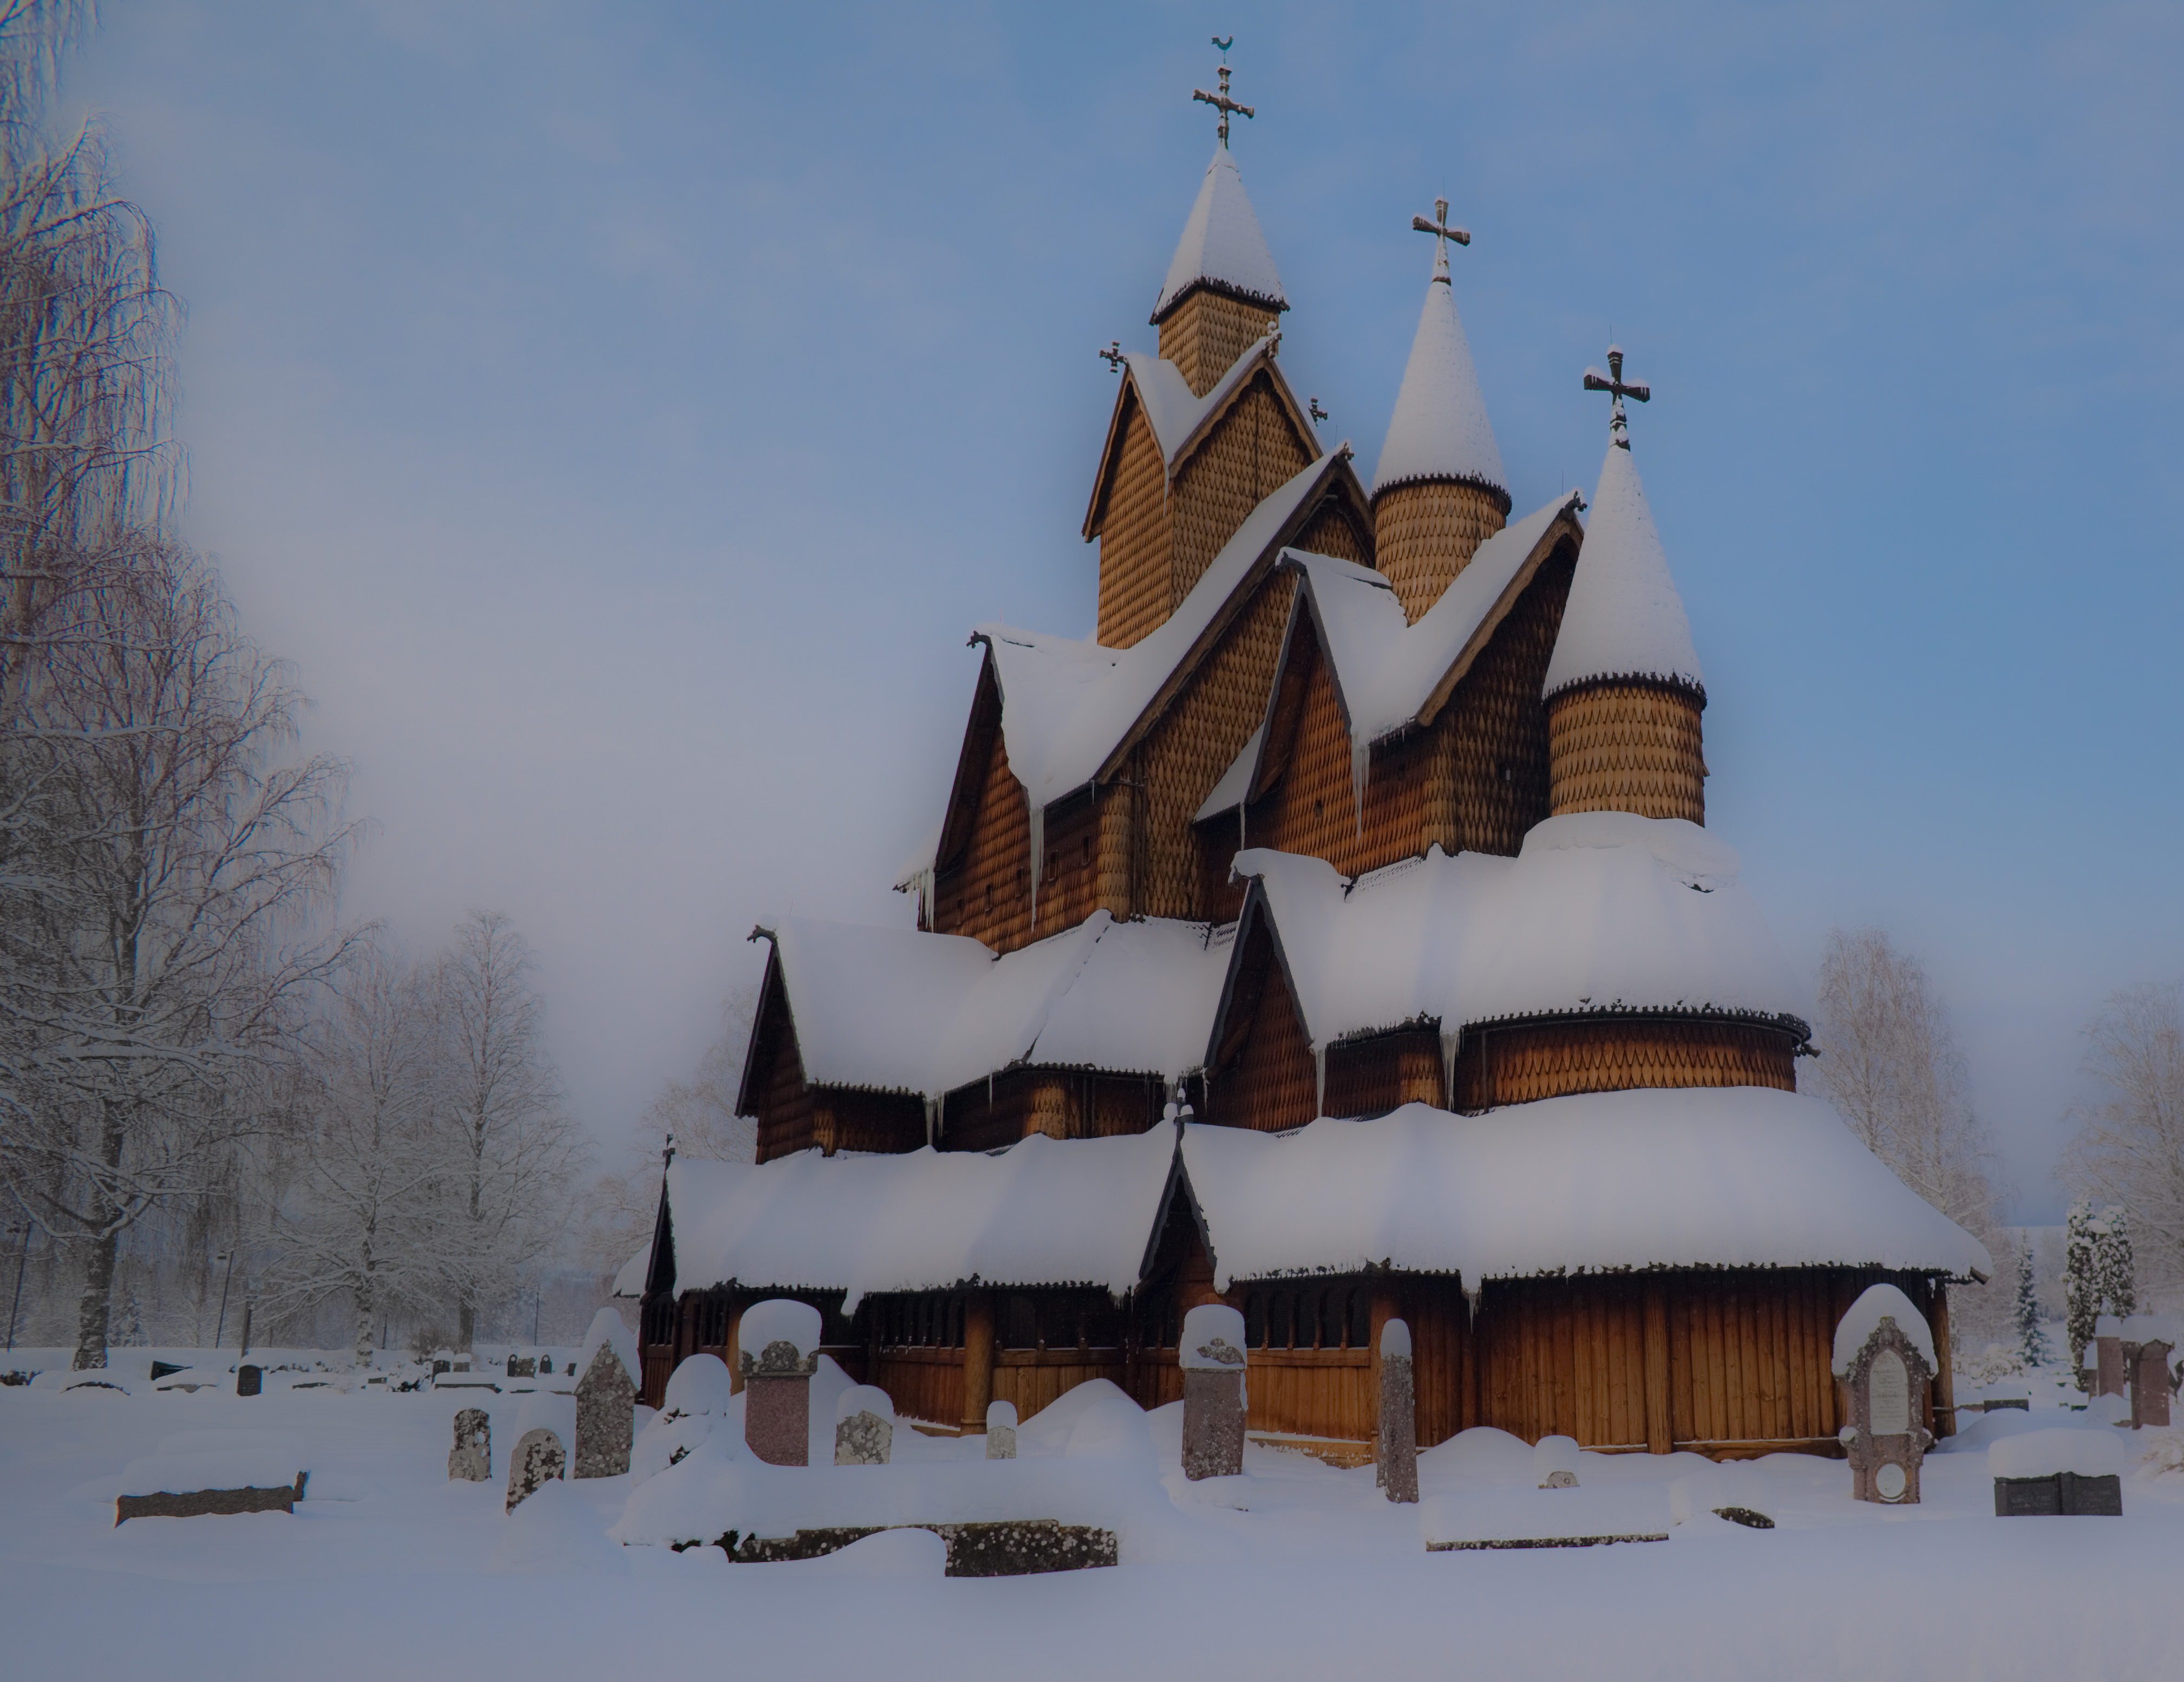 Деревянная церковь в Хеддале. Недалеко от городка Хеддале в Норвегии расположена самая большая деревянная каркасная церковь в Норвегии.